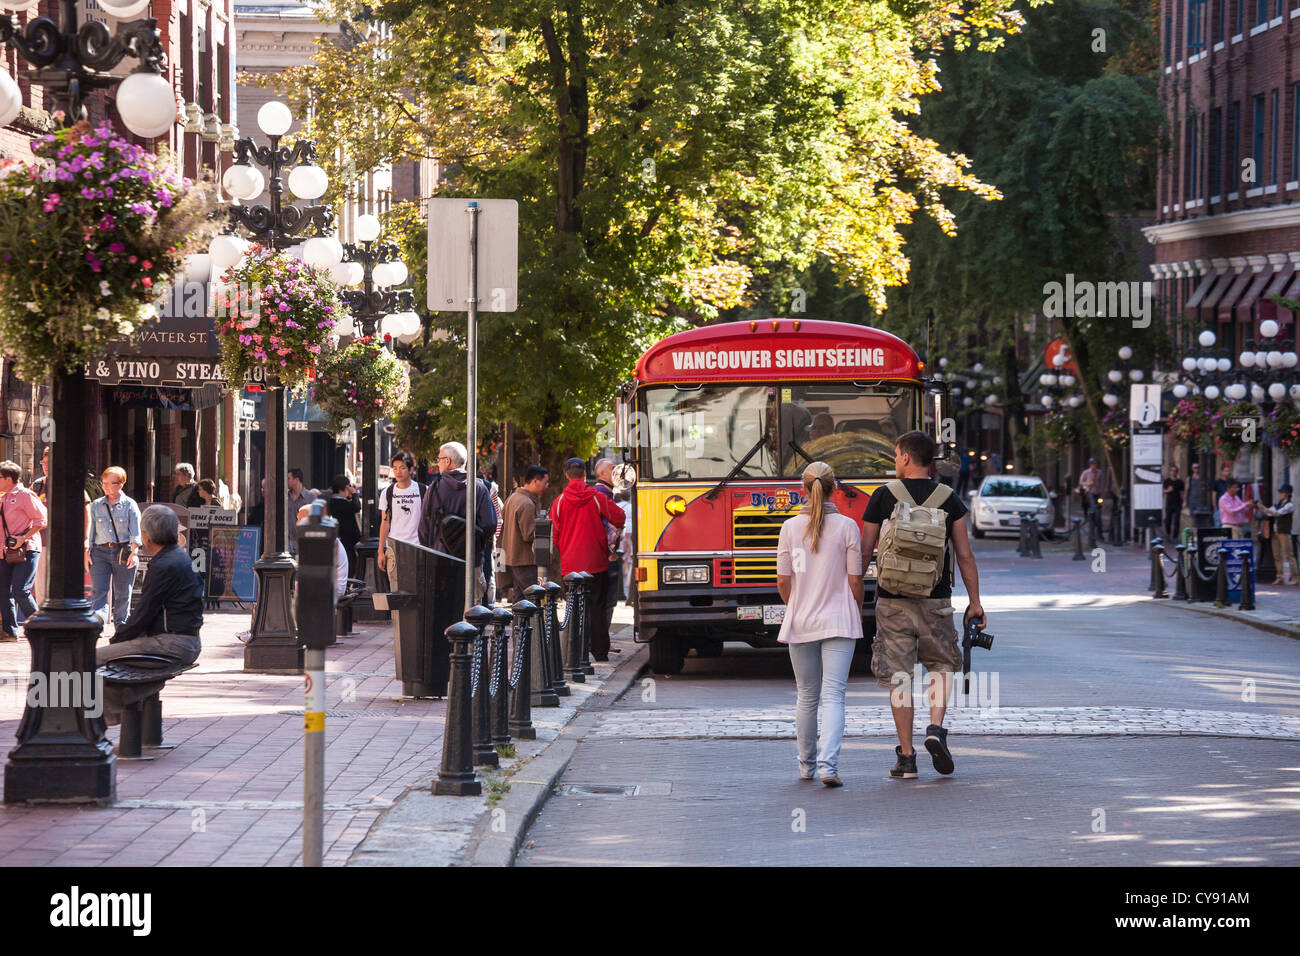 Les touristes et les autobus de tournée, scène de rue animée, Gastown, Vancouver, CA Banque D'Images